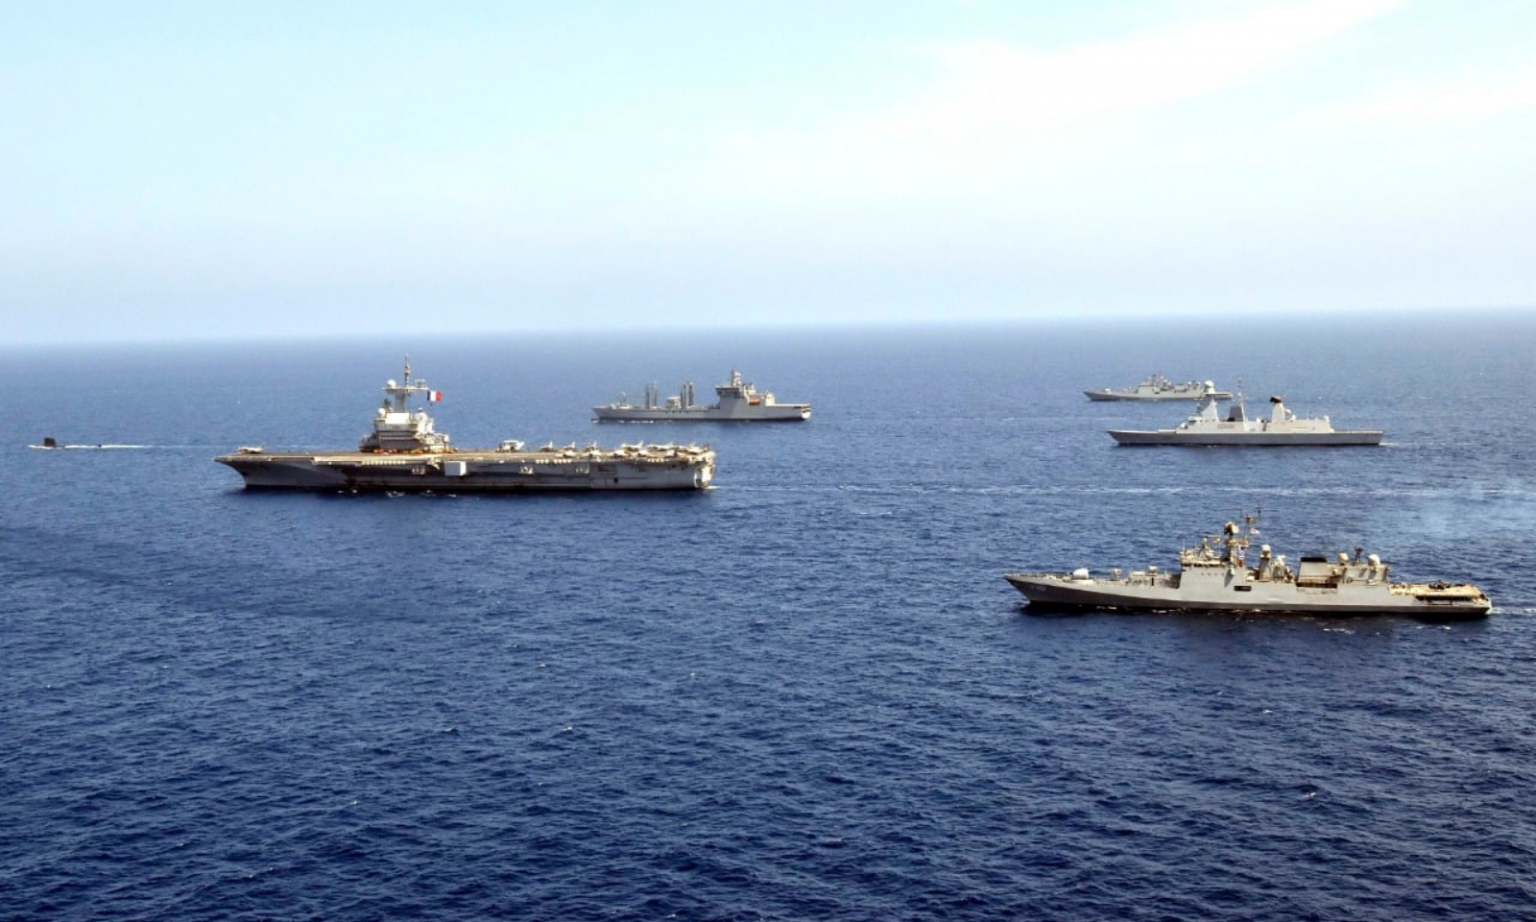 Indian and Indonesian navies conduct exercise in Arabian sea | అరేబియా సముద్రంలో భారత్, ఇండోనేషియా నౌకాదళాలు వ్యాయామాలు నిర్వహించాయి |_40.1